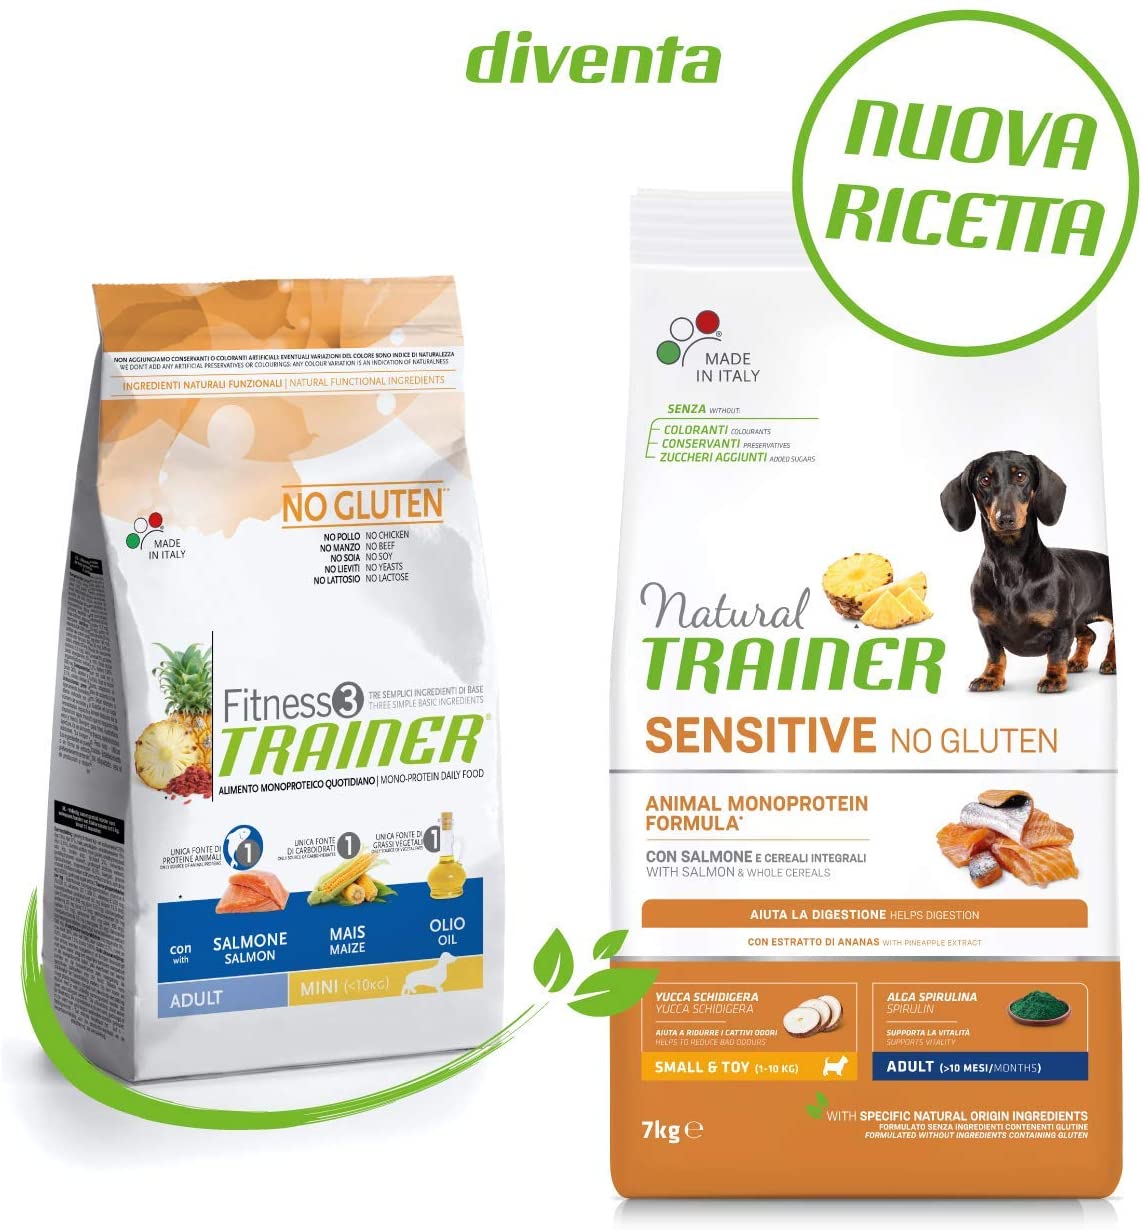  Trainer Natural Sensitive No Gluten - Comida para Perros 